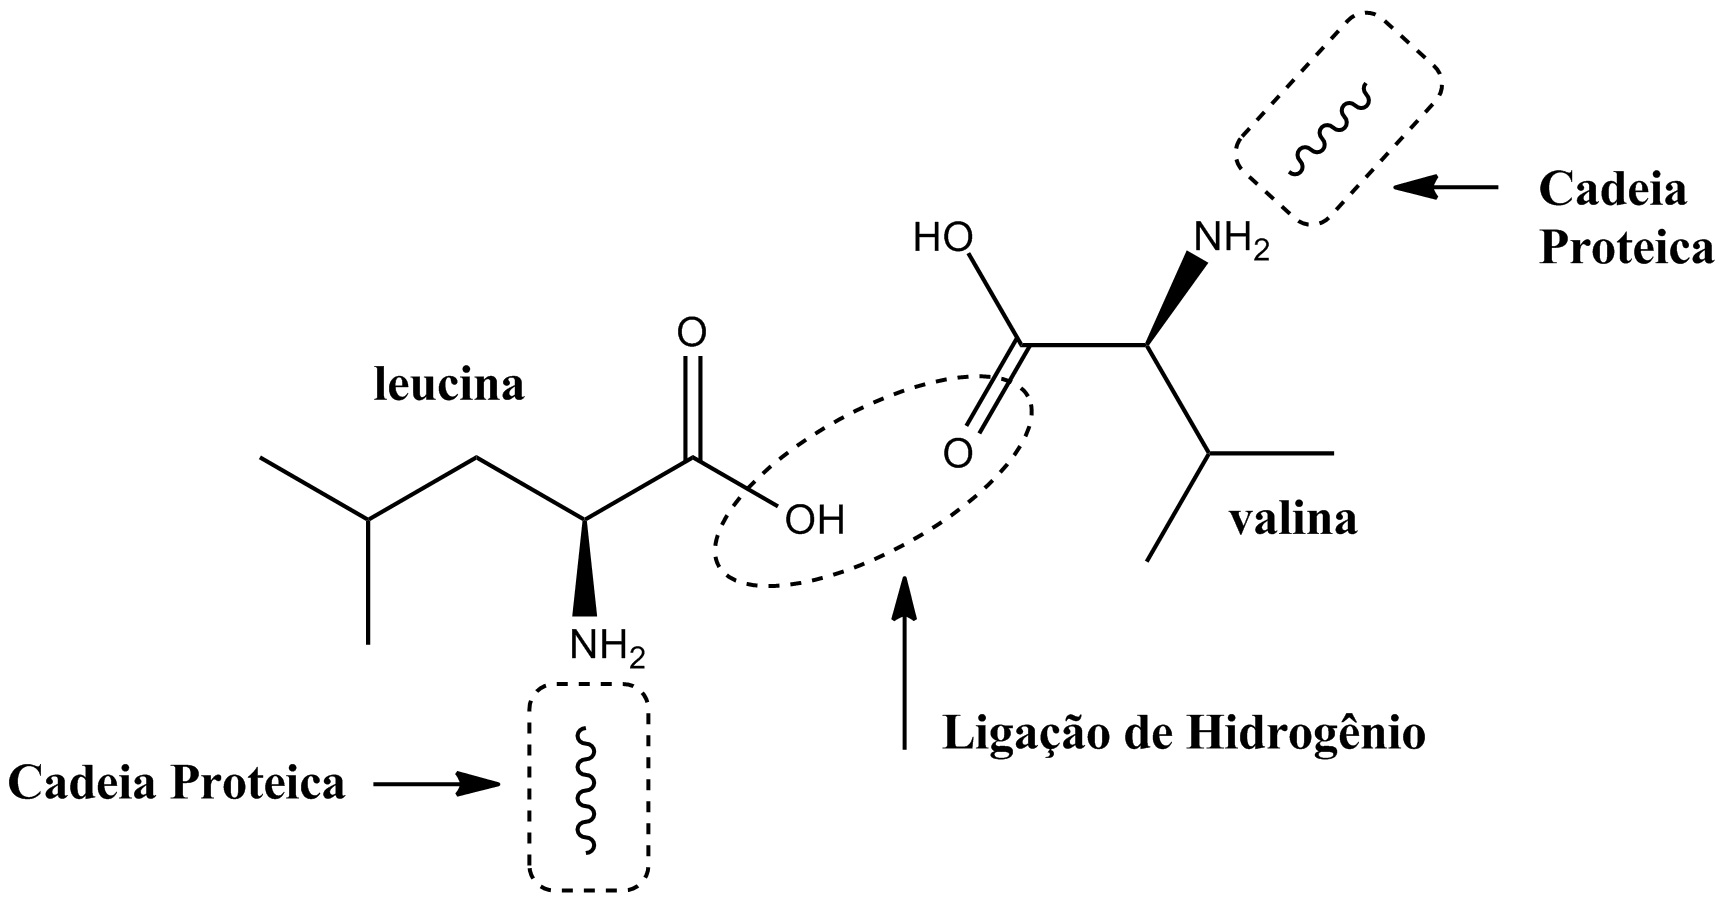 Ligação de hidrogenio